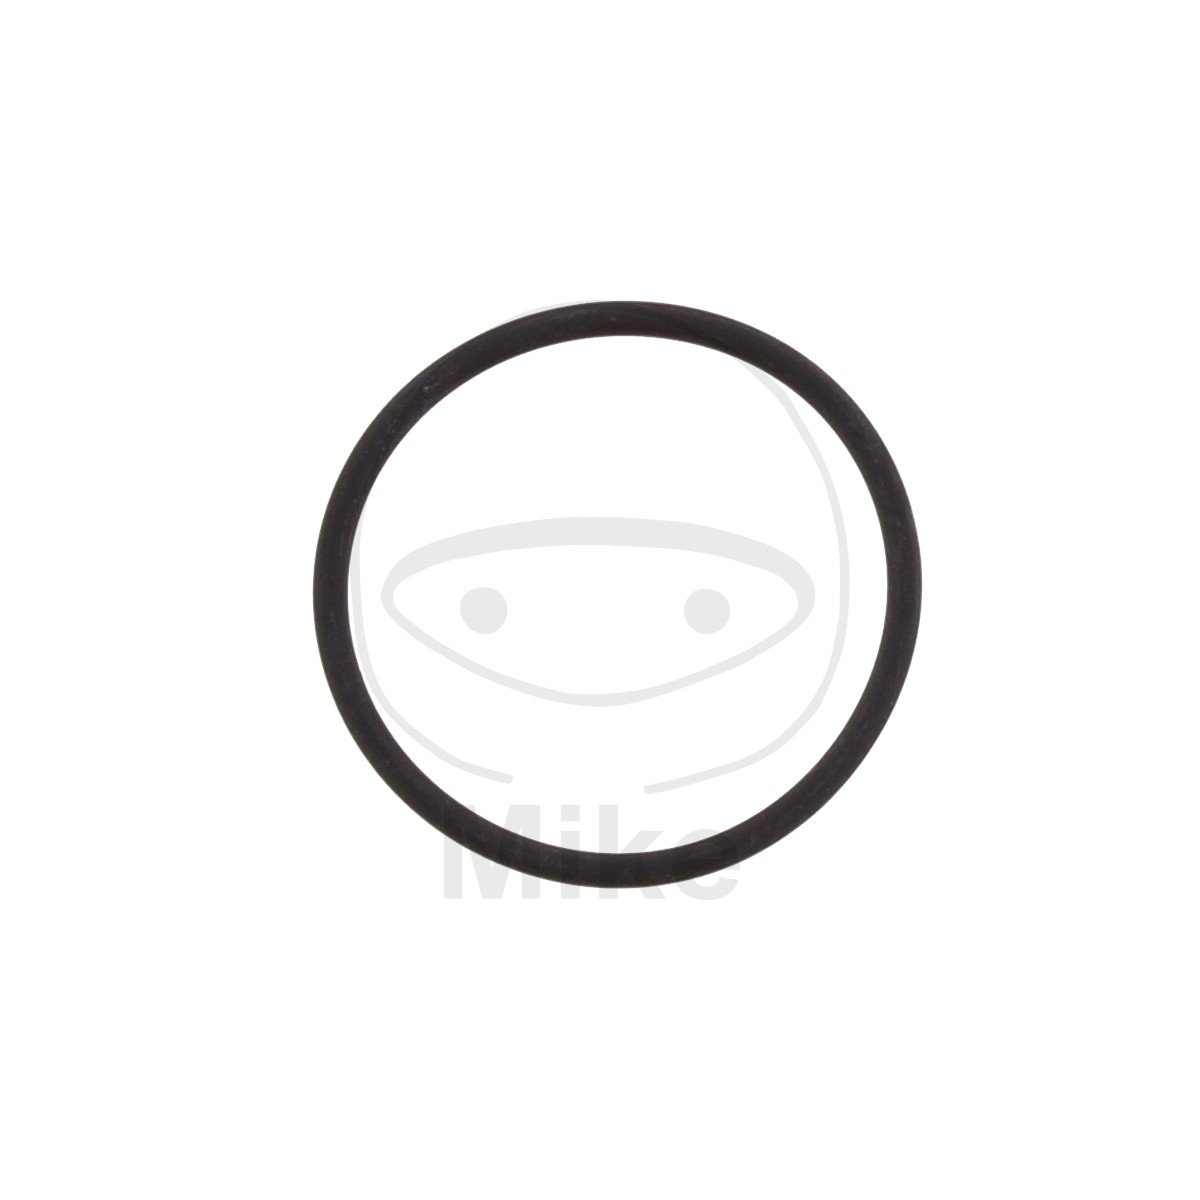 Obrázek produktu Těsnění sání o-kroužkové ATHENA M752002900004 O-kroužek 2X29 mm